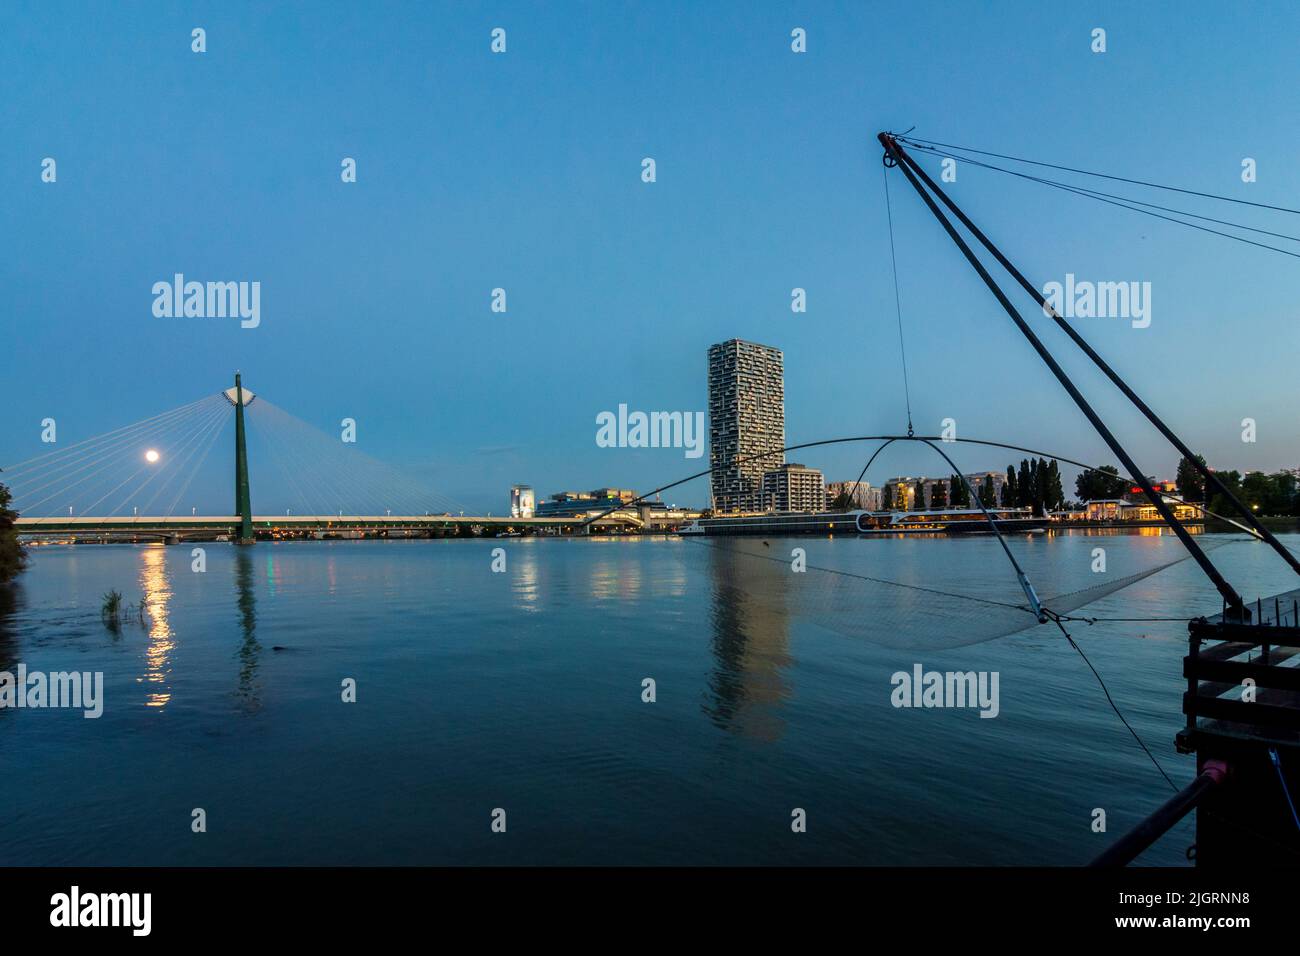 Viena, Viena: río Donau (Danubio), barco Daubel con red de pesca elevadora, barco de crucero, torre Marina Tower, metro puente Donaustadtbrücke, full mo Foto de stock